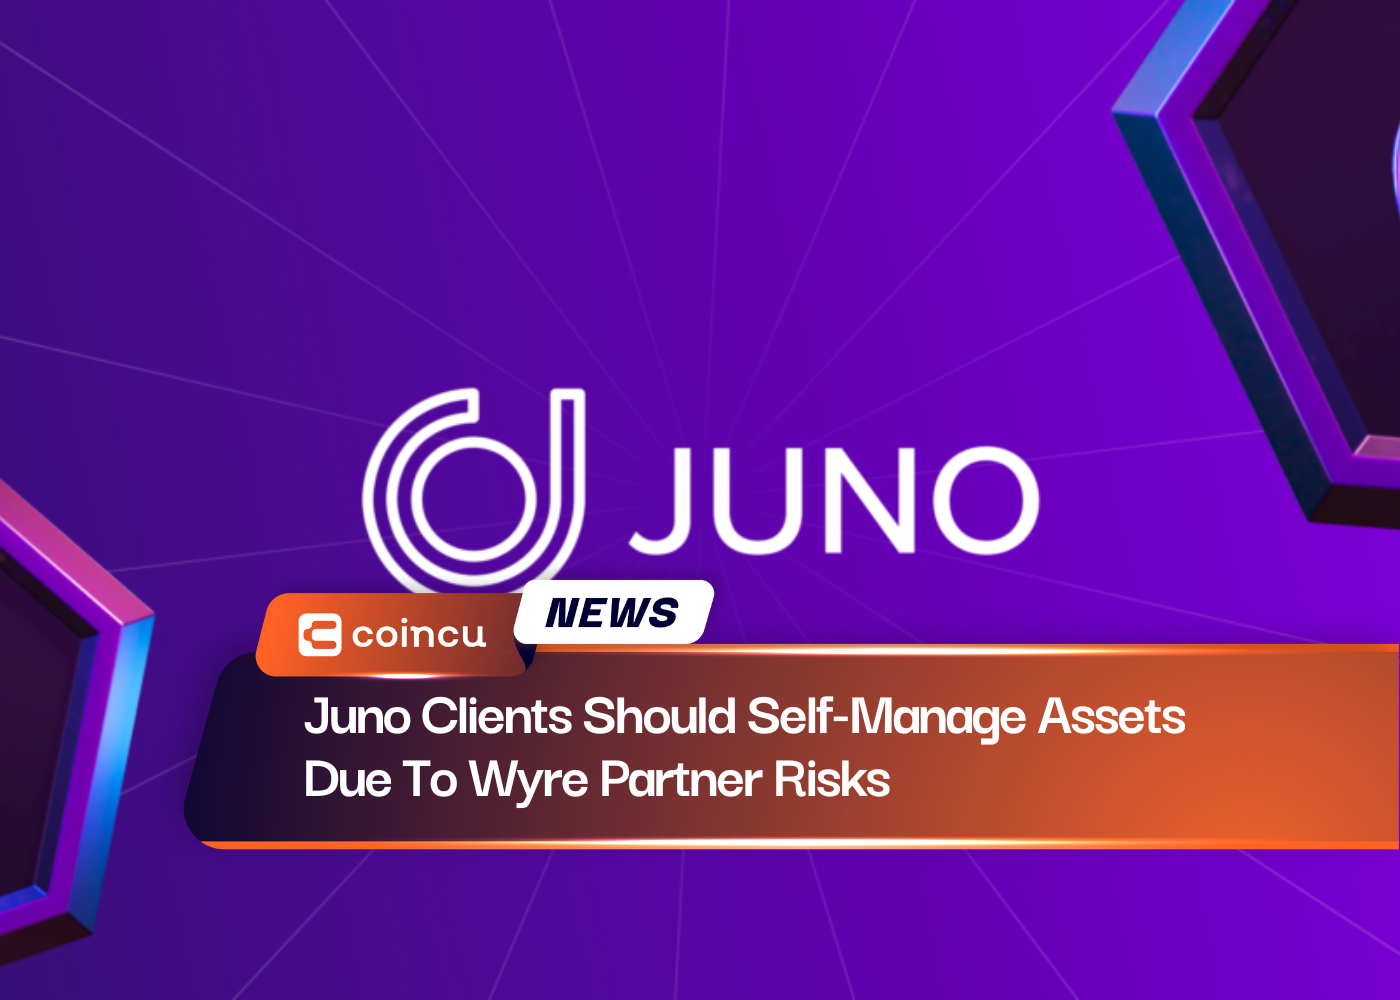 वायर पार्टनर जोखिमों के कारण जूनो के ग्राहकों को परिसंपत्तियों का स्व-प्रबंधन करना चाहिए